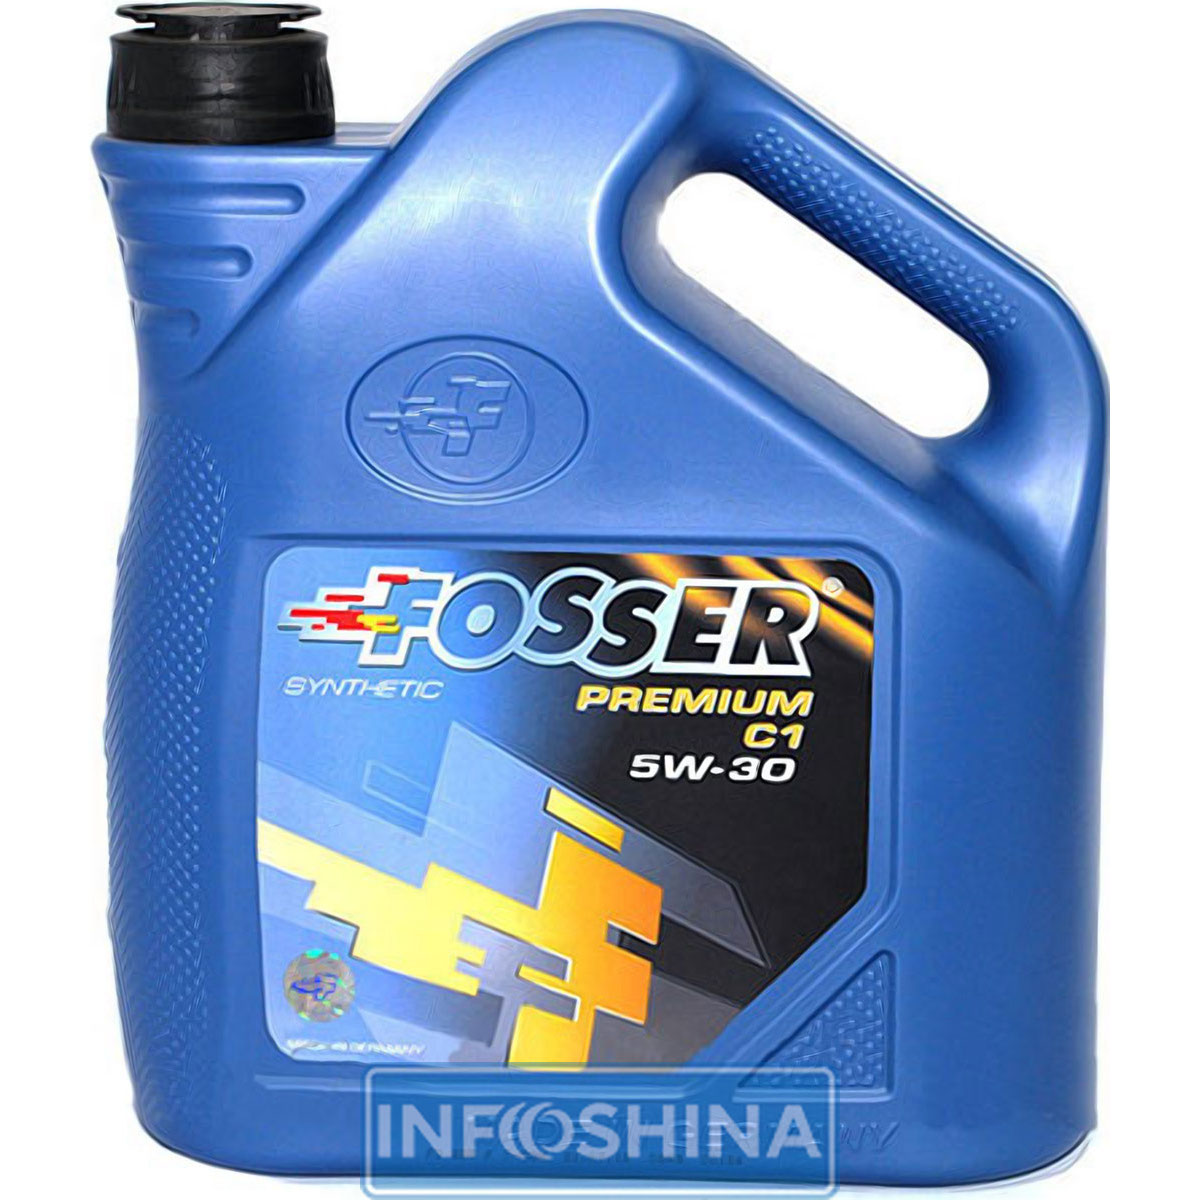 Купить масло Fosser Premium C1 5W-30 (4л)